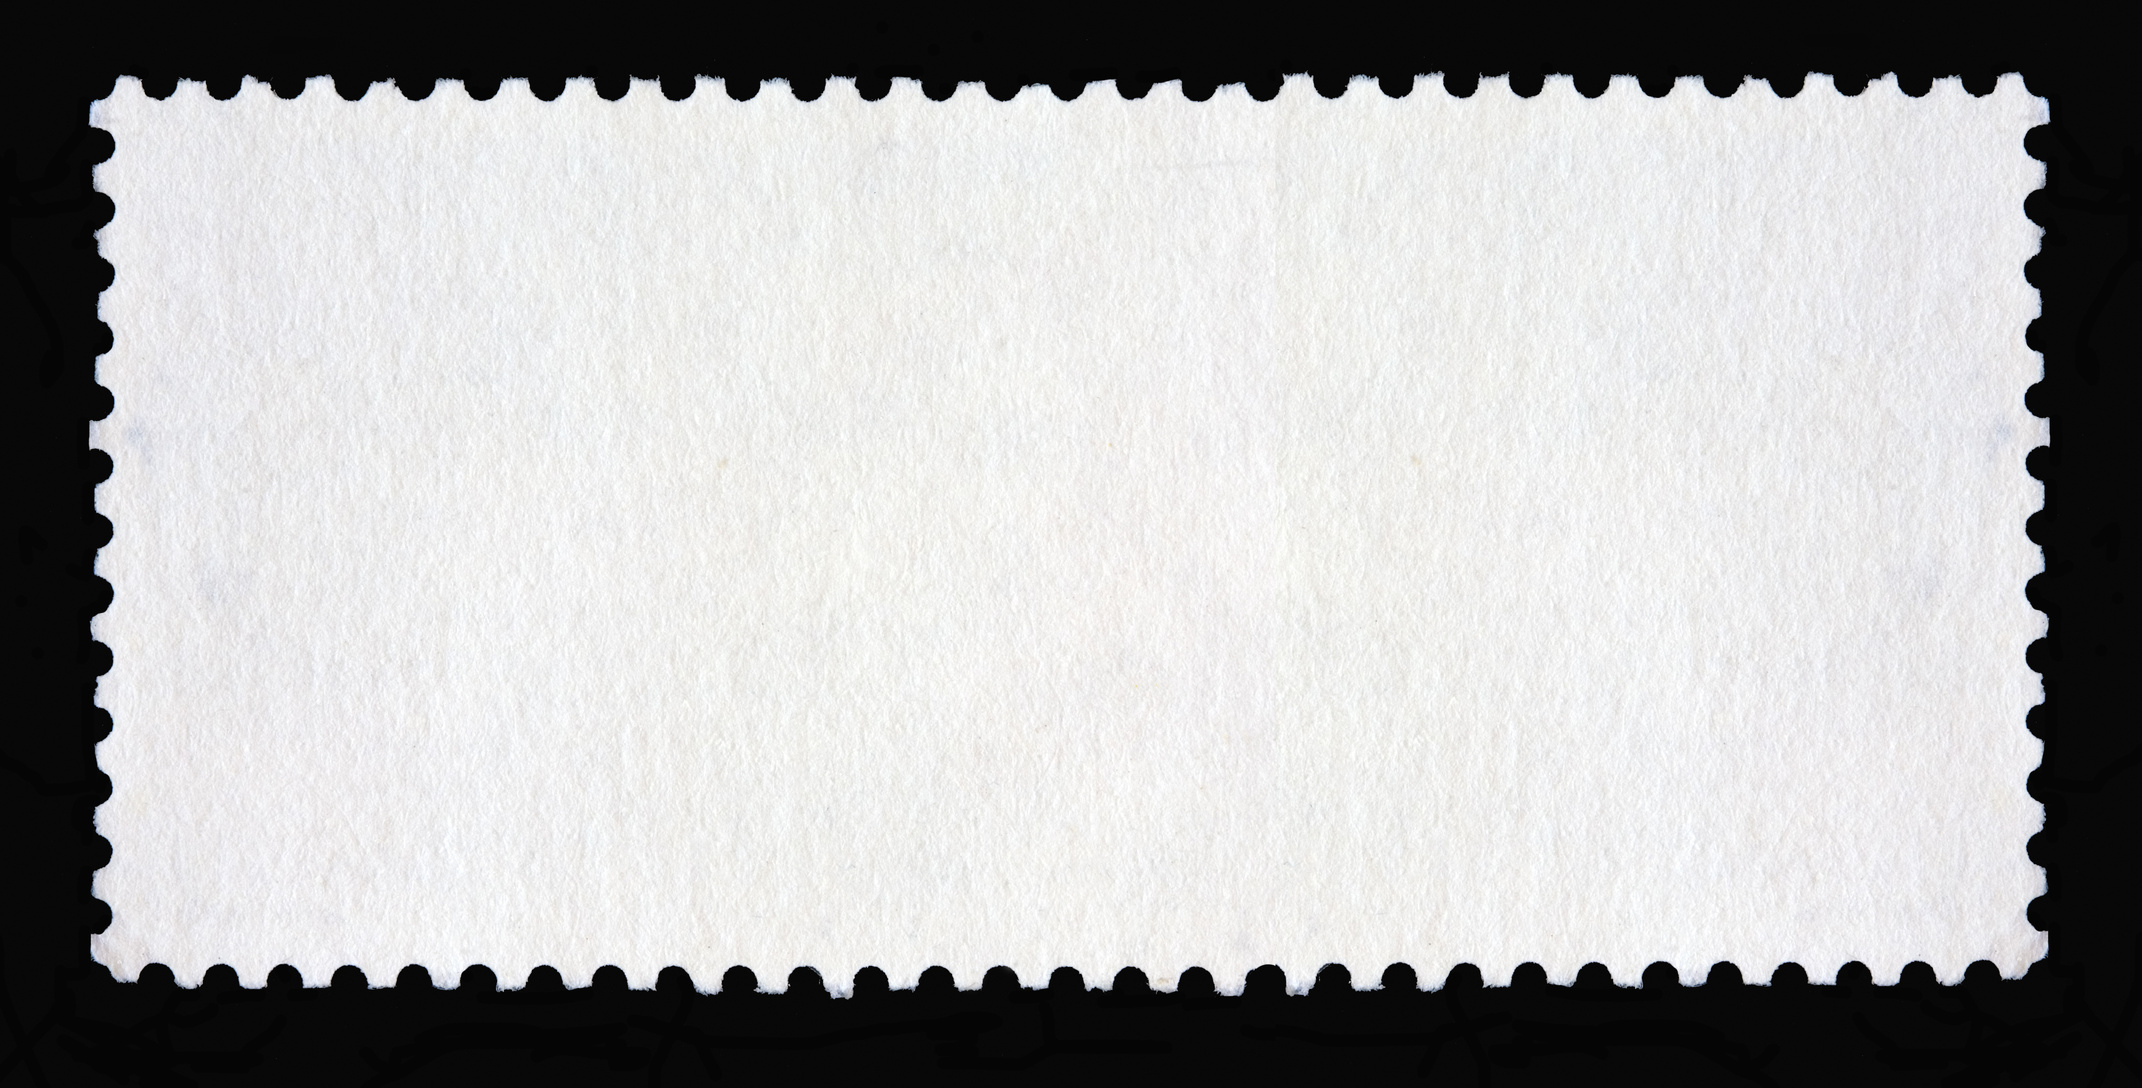 Blank long rectangular postage stamp